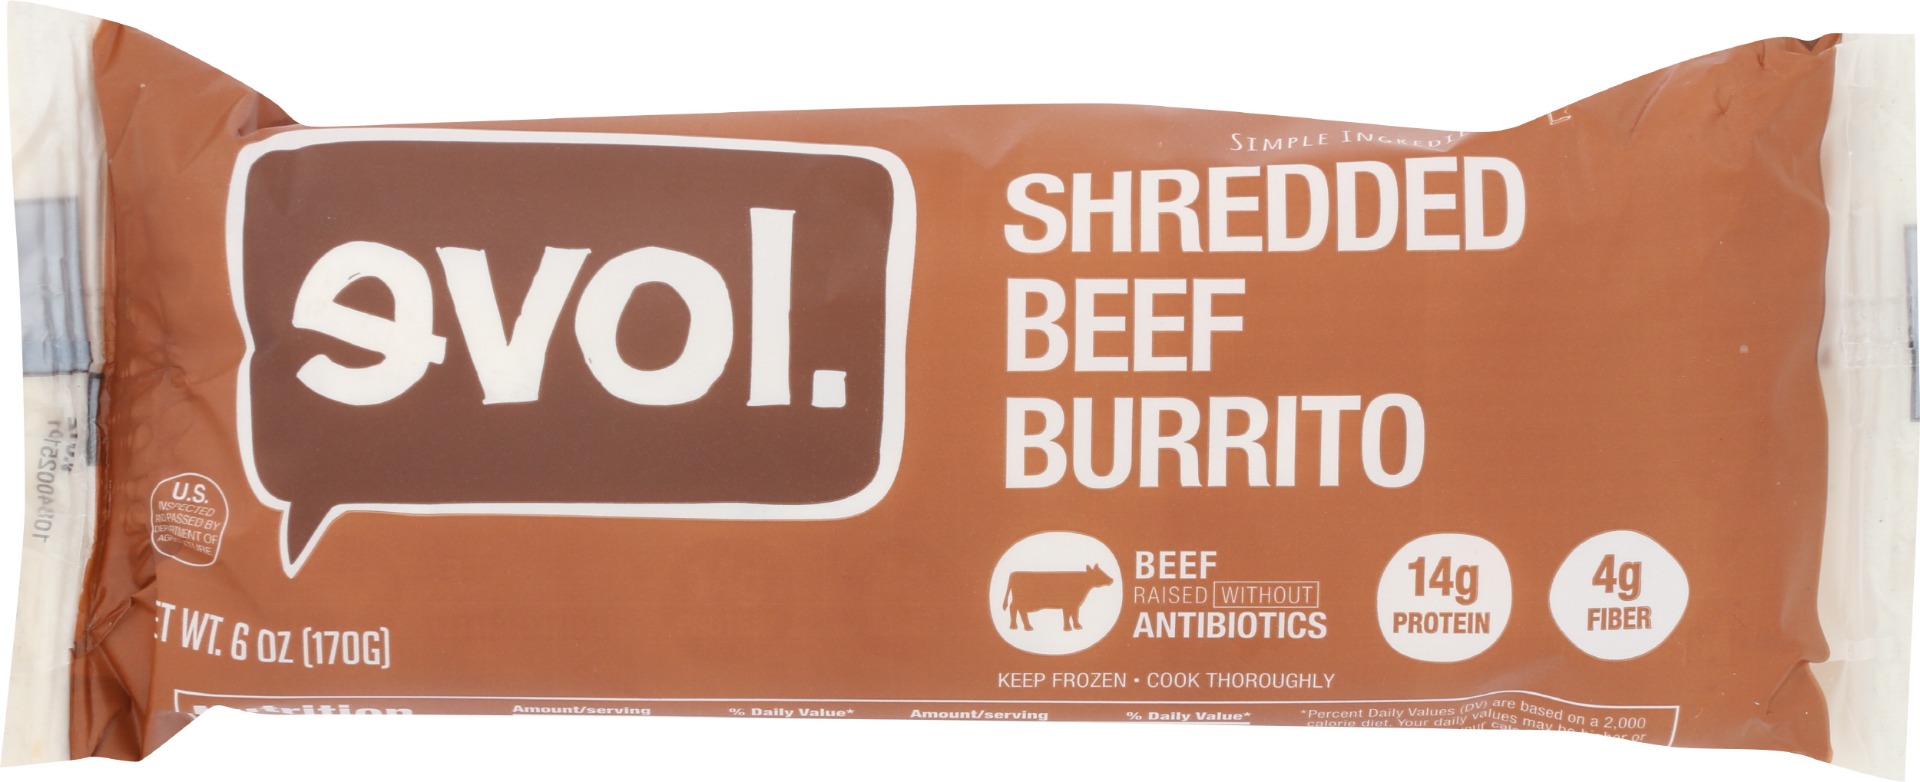 Evol., Shredded Beef Burrito - 891627002511